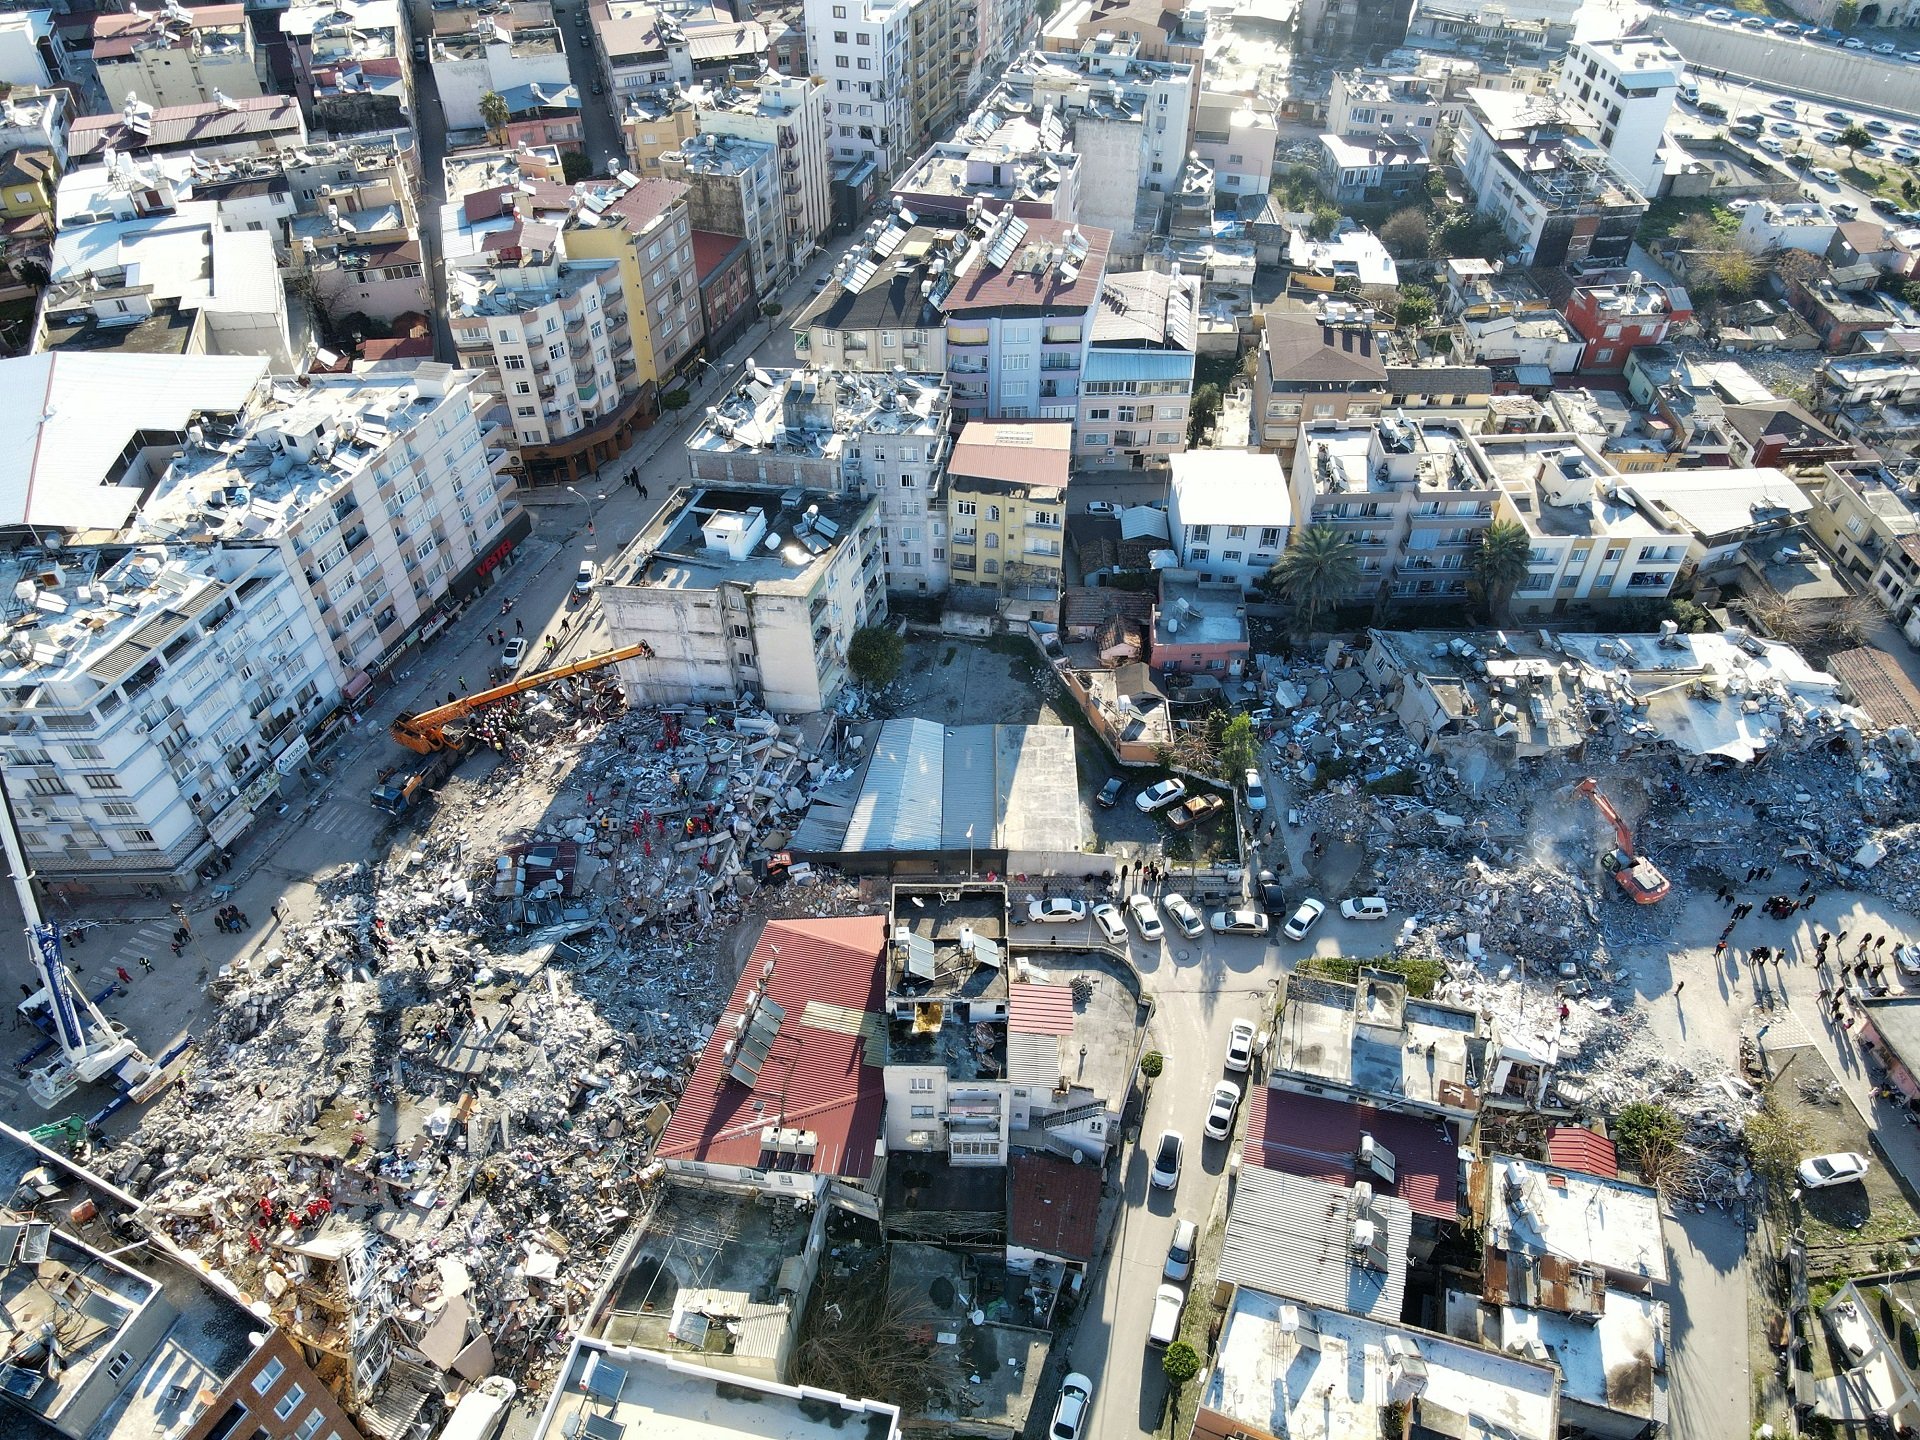 L'abans i el després de la destrucció del terratrèmol a Turquia, a vista de satèl·lit